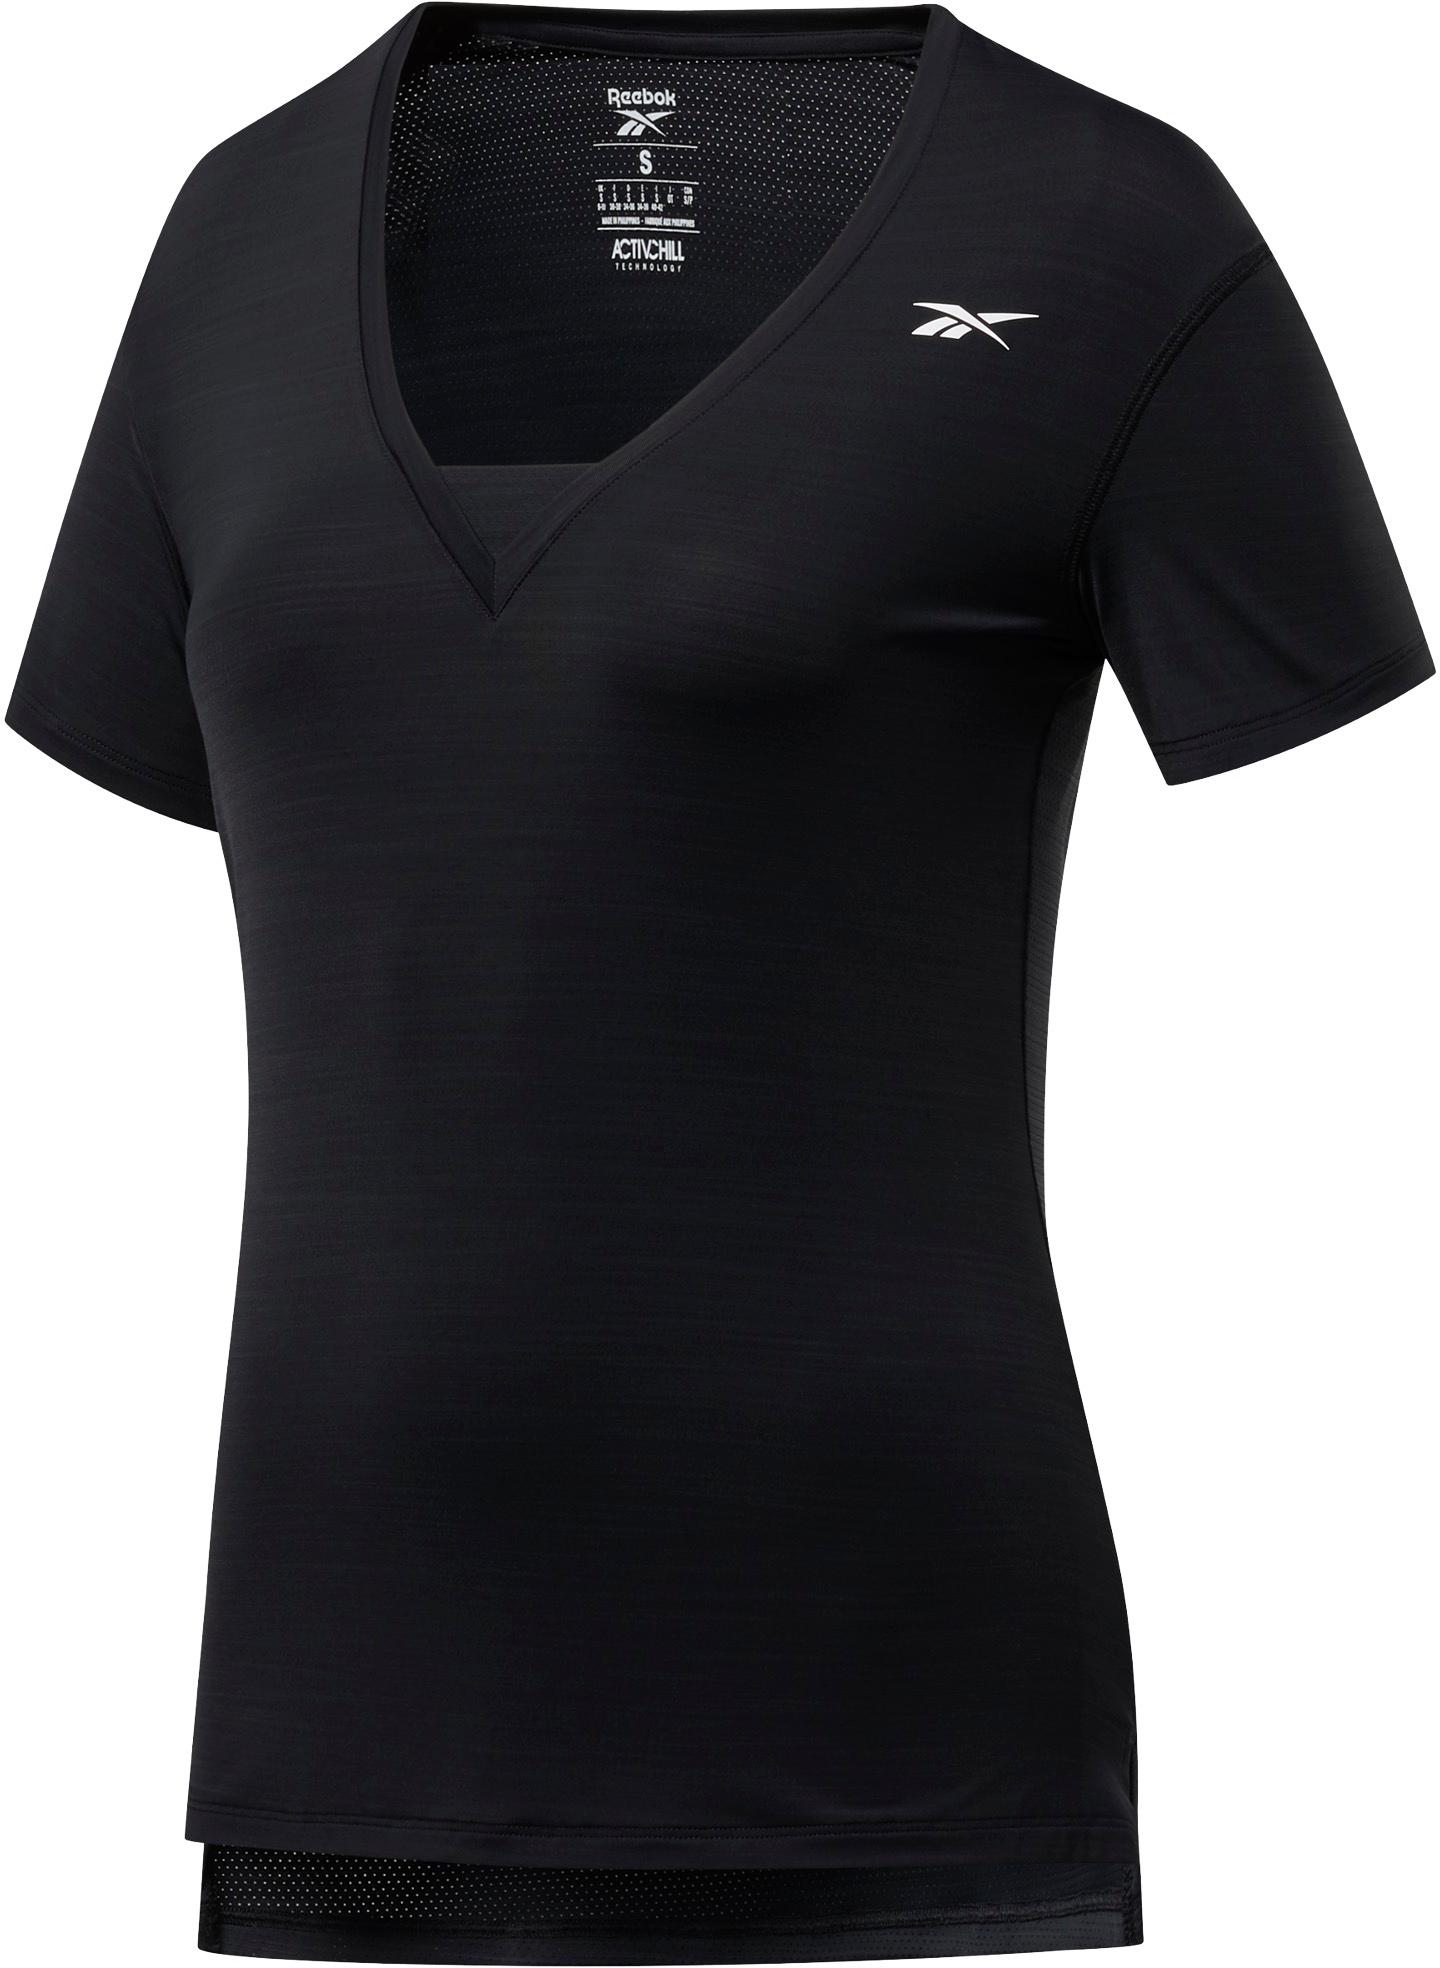 Reebok Funktionsshirt Damen black im Online Shop von SportScheck kaufen